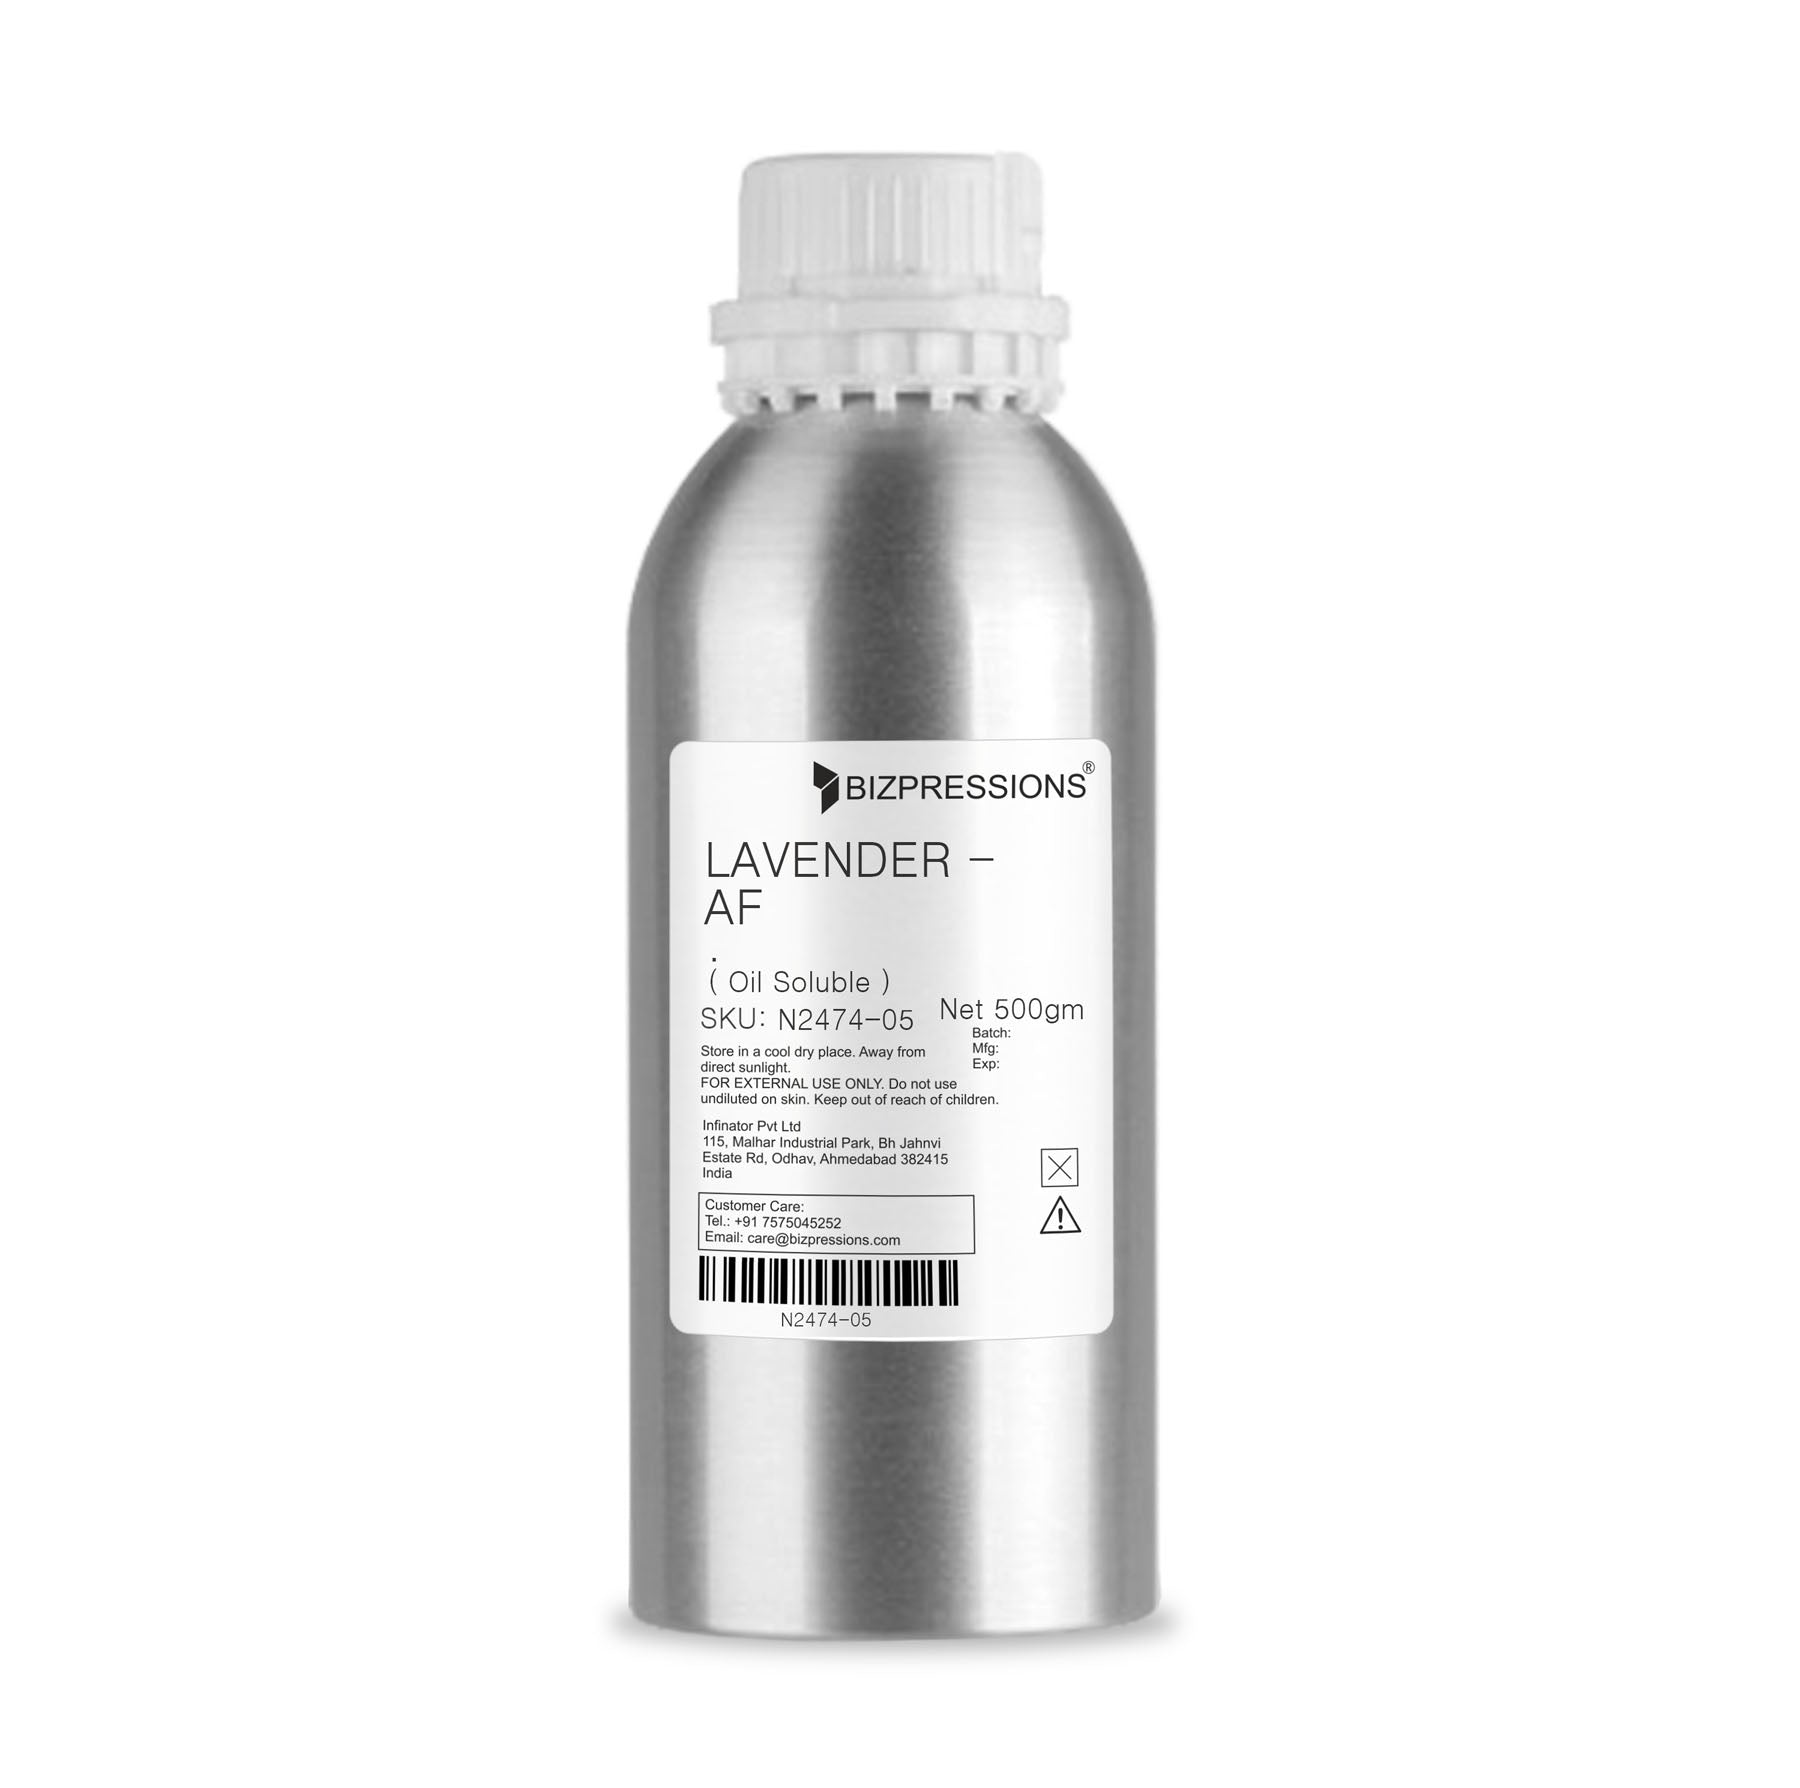 LAVENDER - AF - Fragrance ( Oil Soluble ) - 500 gm